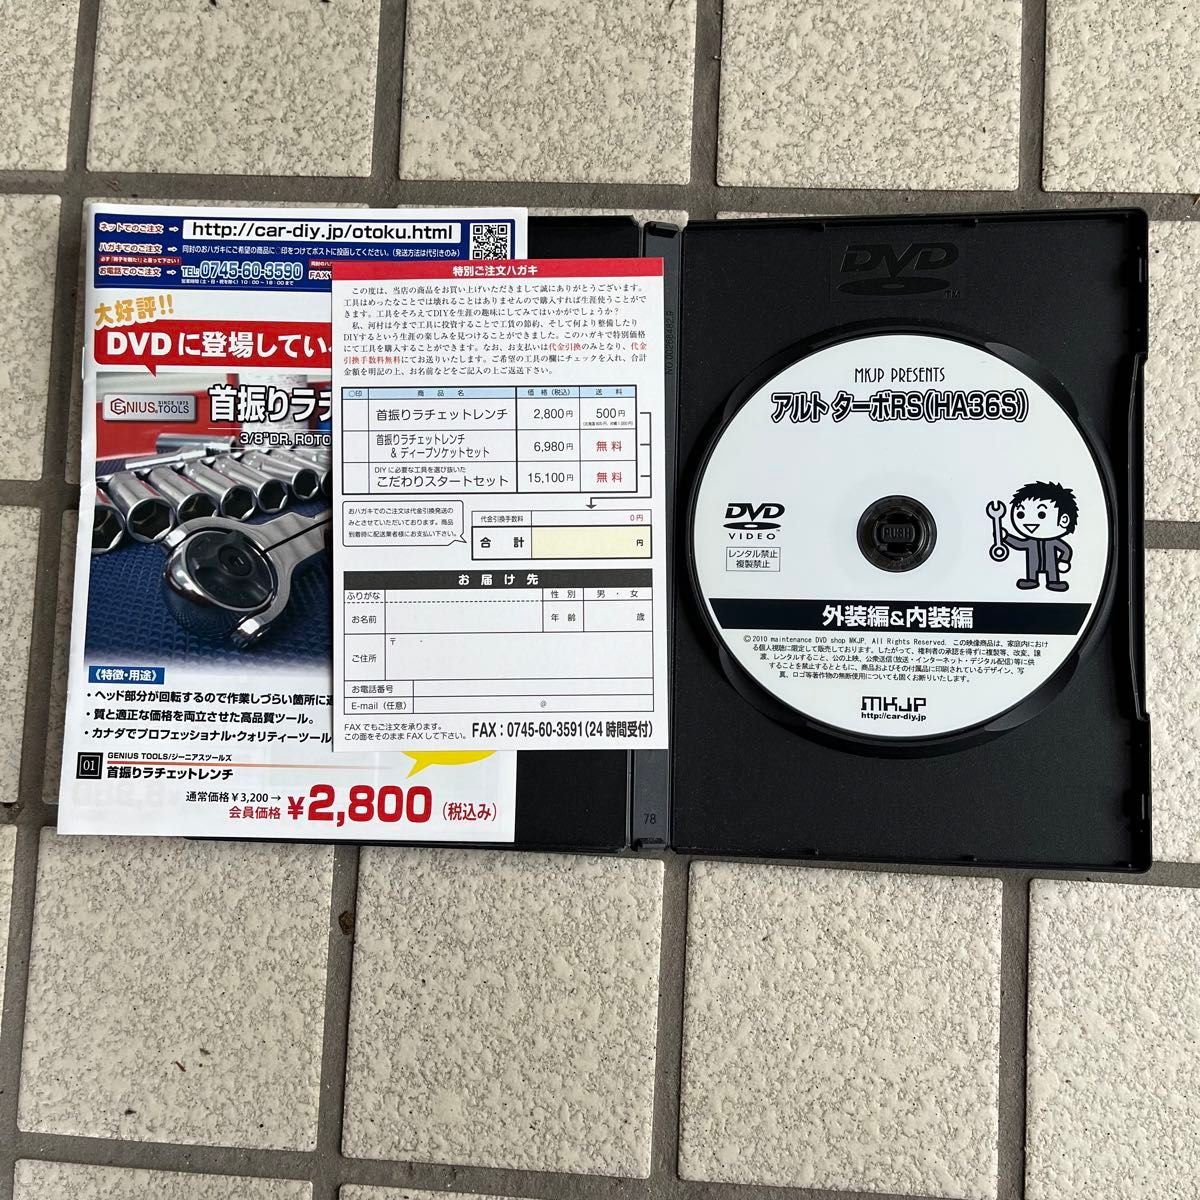 メンテ用DVD アルトターボRS(HA36S)メンテナンスオールインワン MKJP